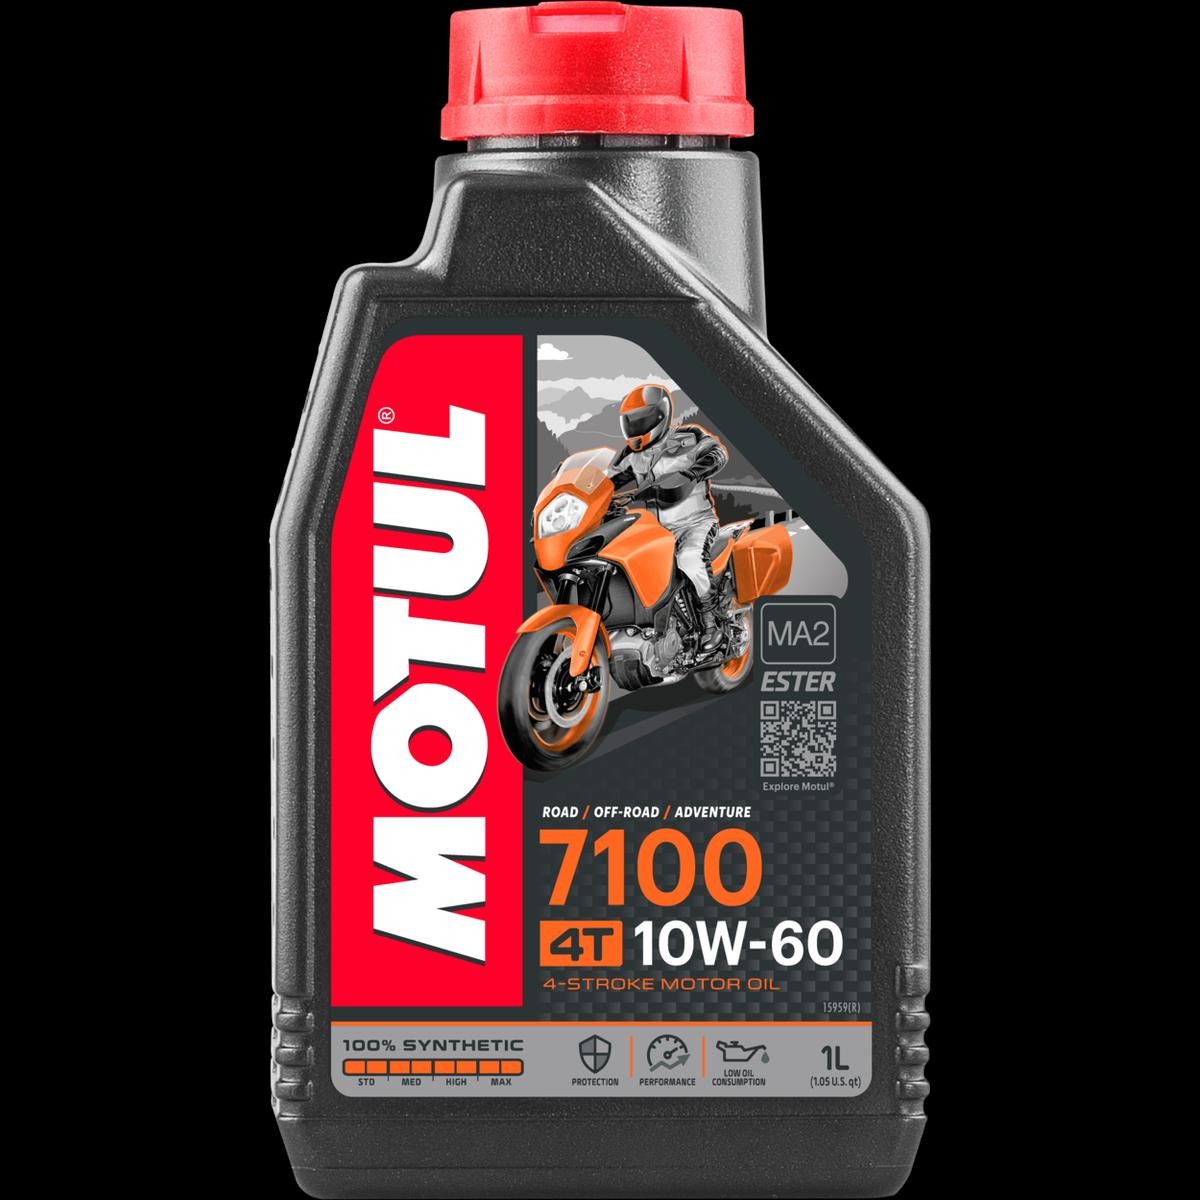 Motorrad MOTUL 7100 4T 10W-60, 1l Motoröl 109384 günstig kaufen